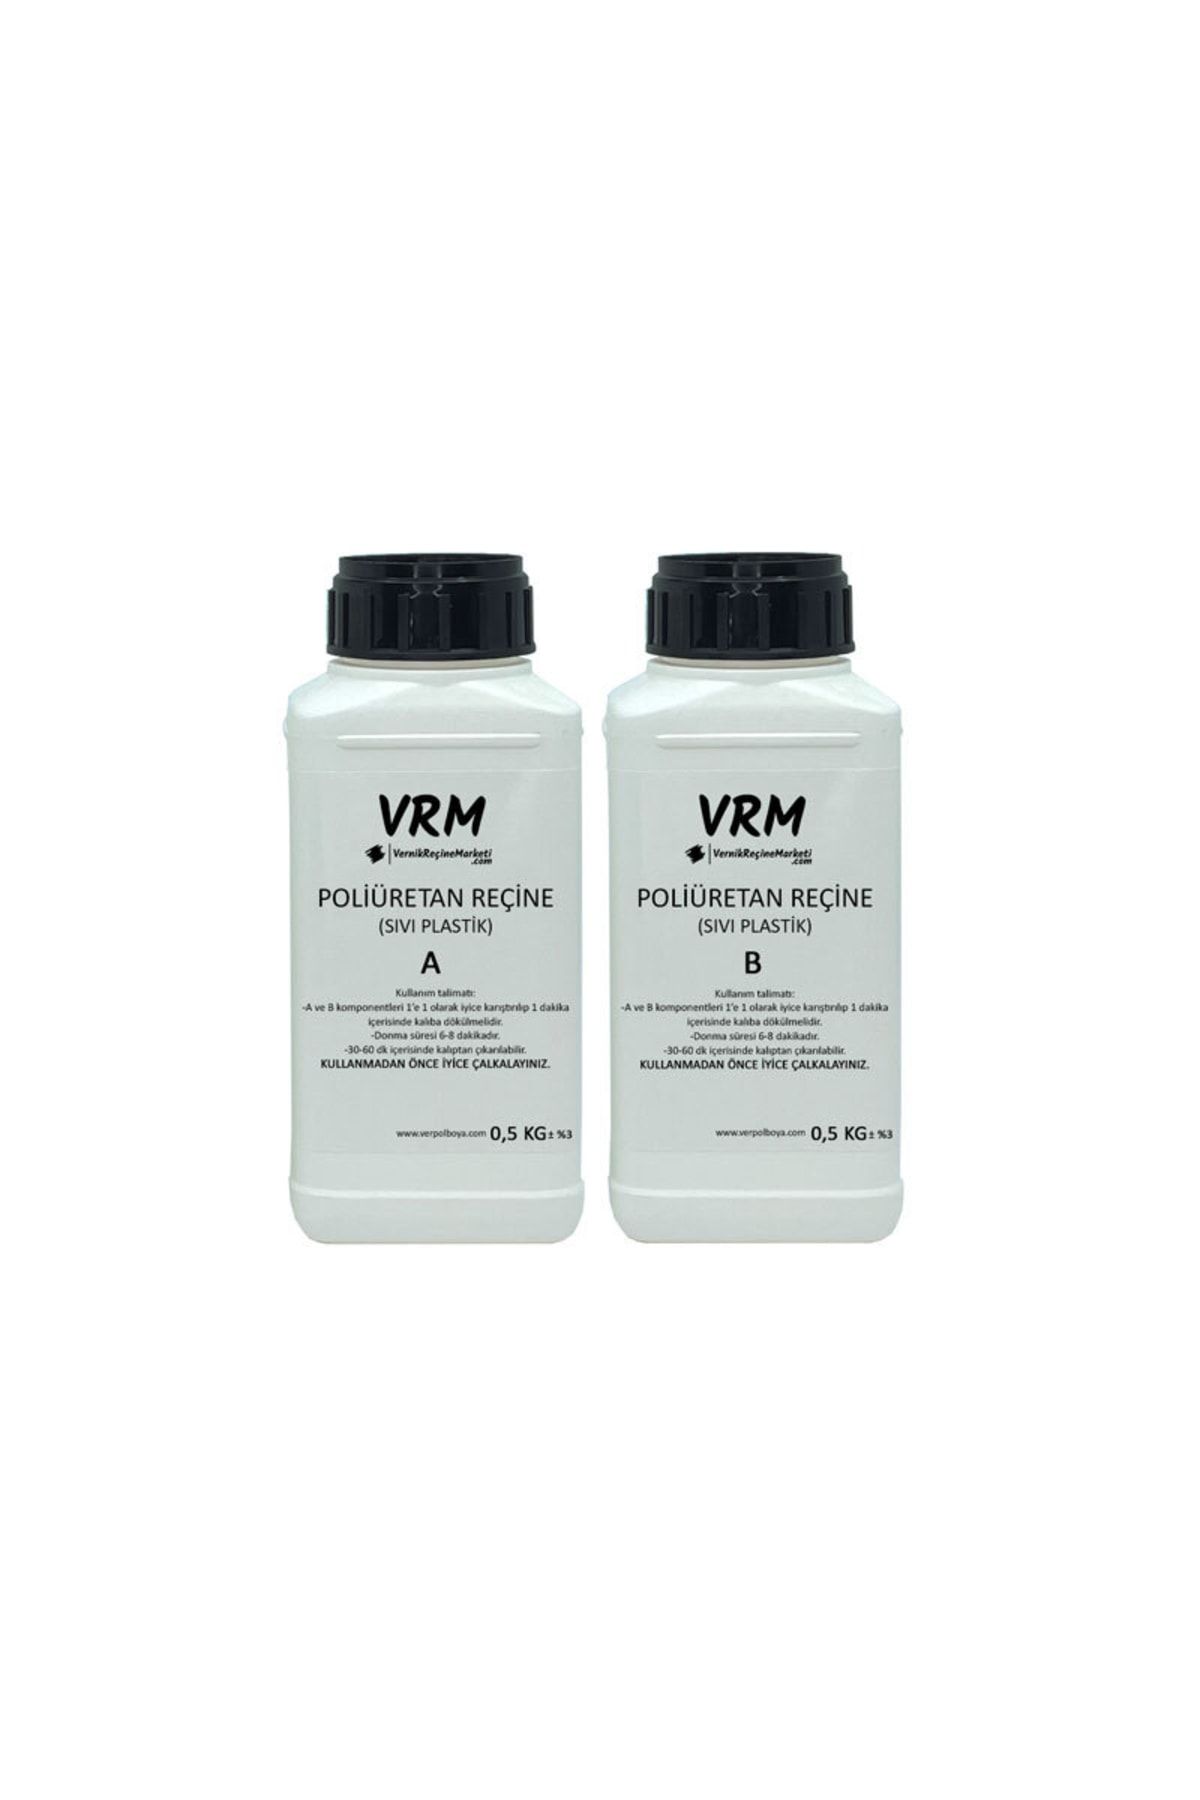 VRM VernikRecineMarketi Poliüretan Döküm Reçinesi - Sıvı Plastik - 1 Kg